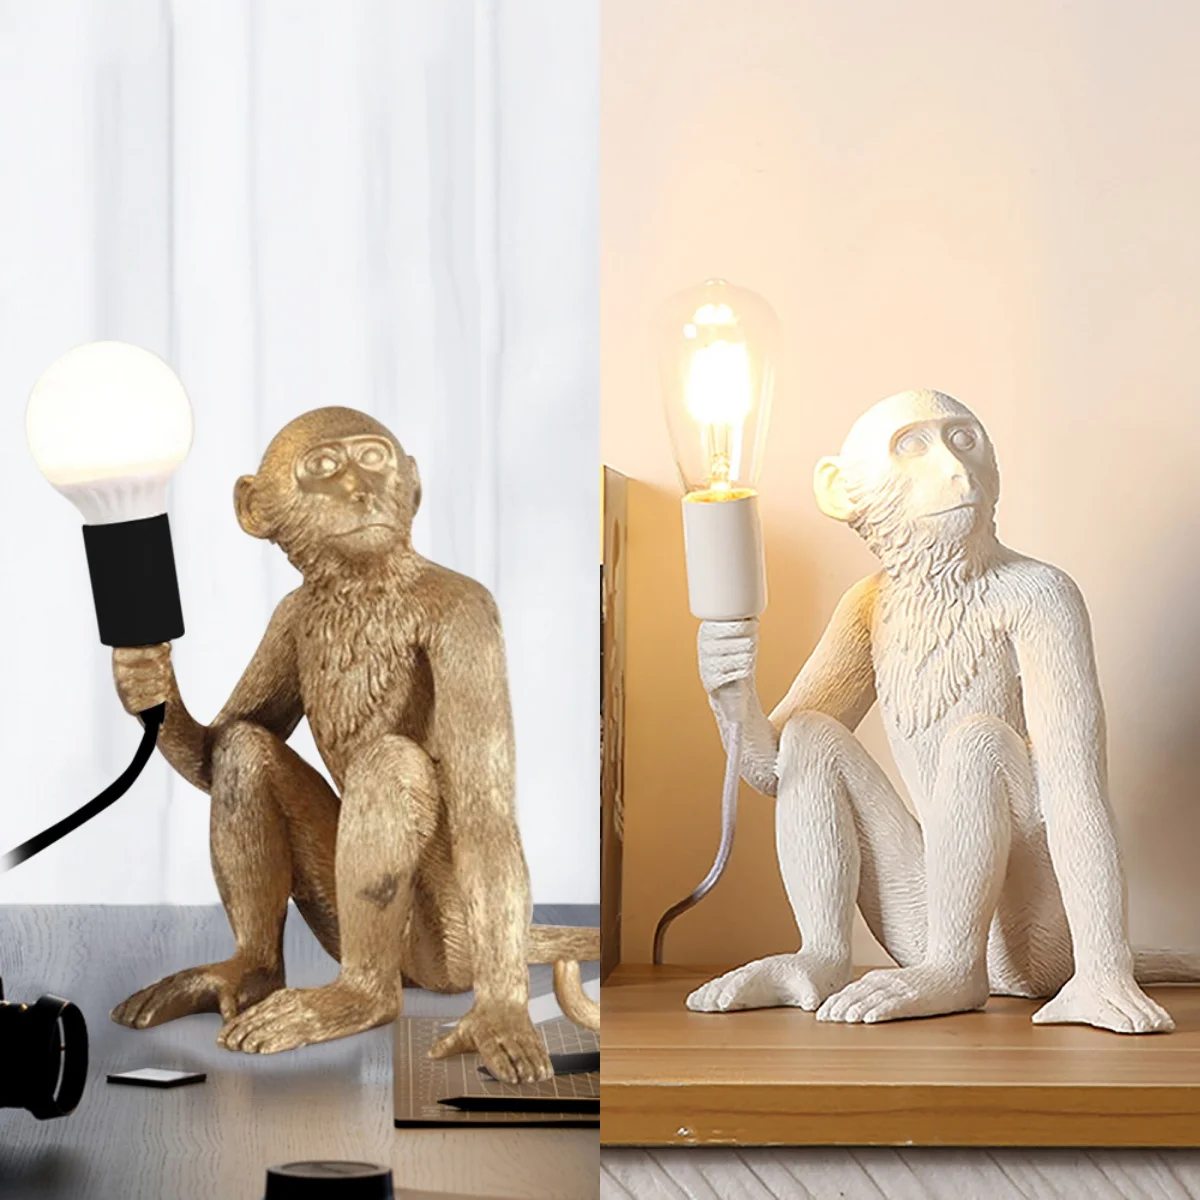 

Monkey Table Lamp Sitting Monkey Light Creative Desk Lamp Vertical Resin Table Light Gift for Home Office Bedroom Décor